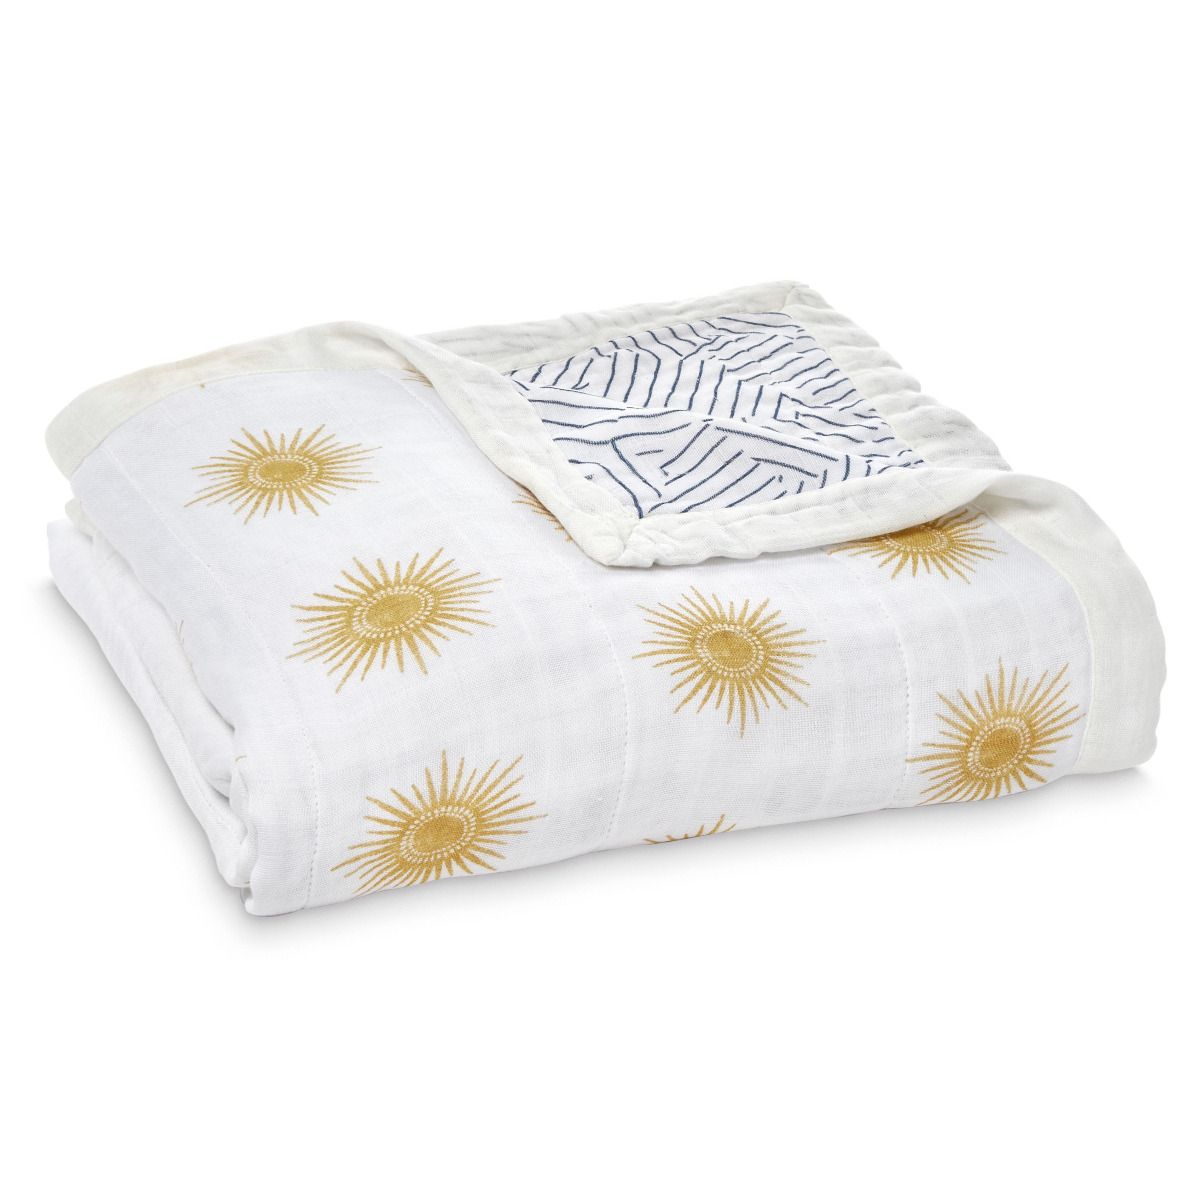 Одеяло из бамбука Golden Sun